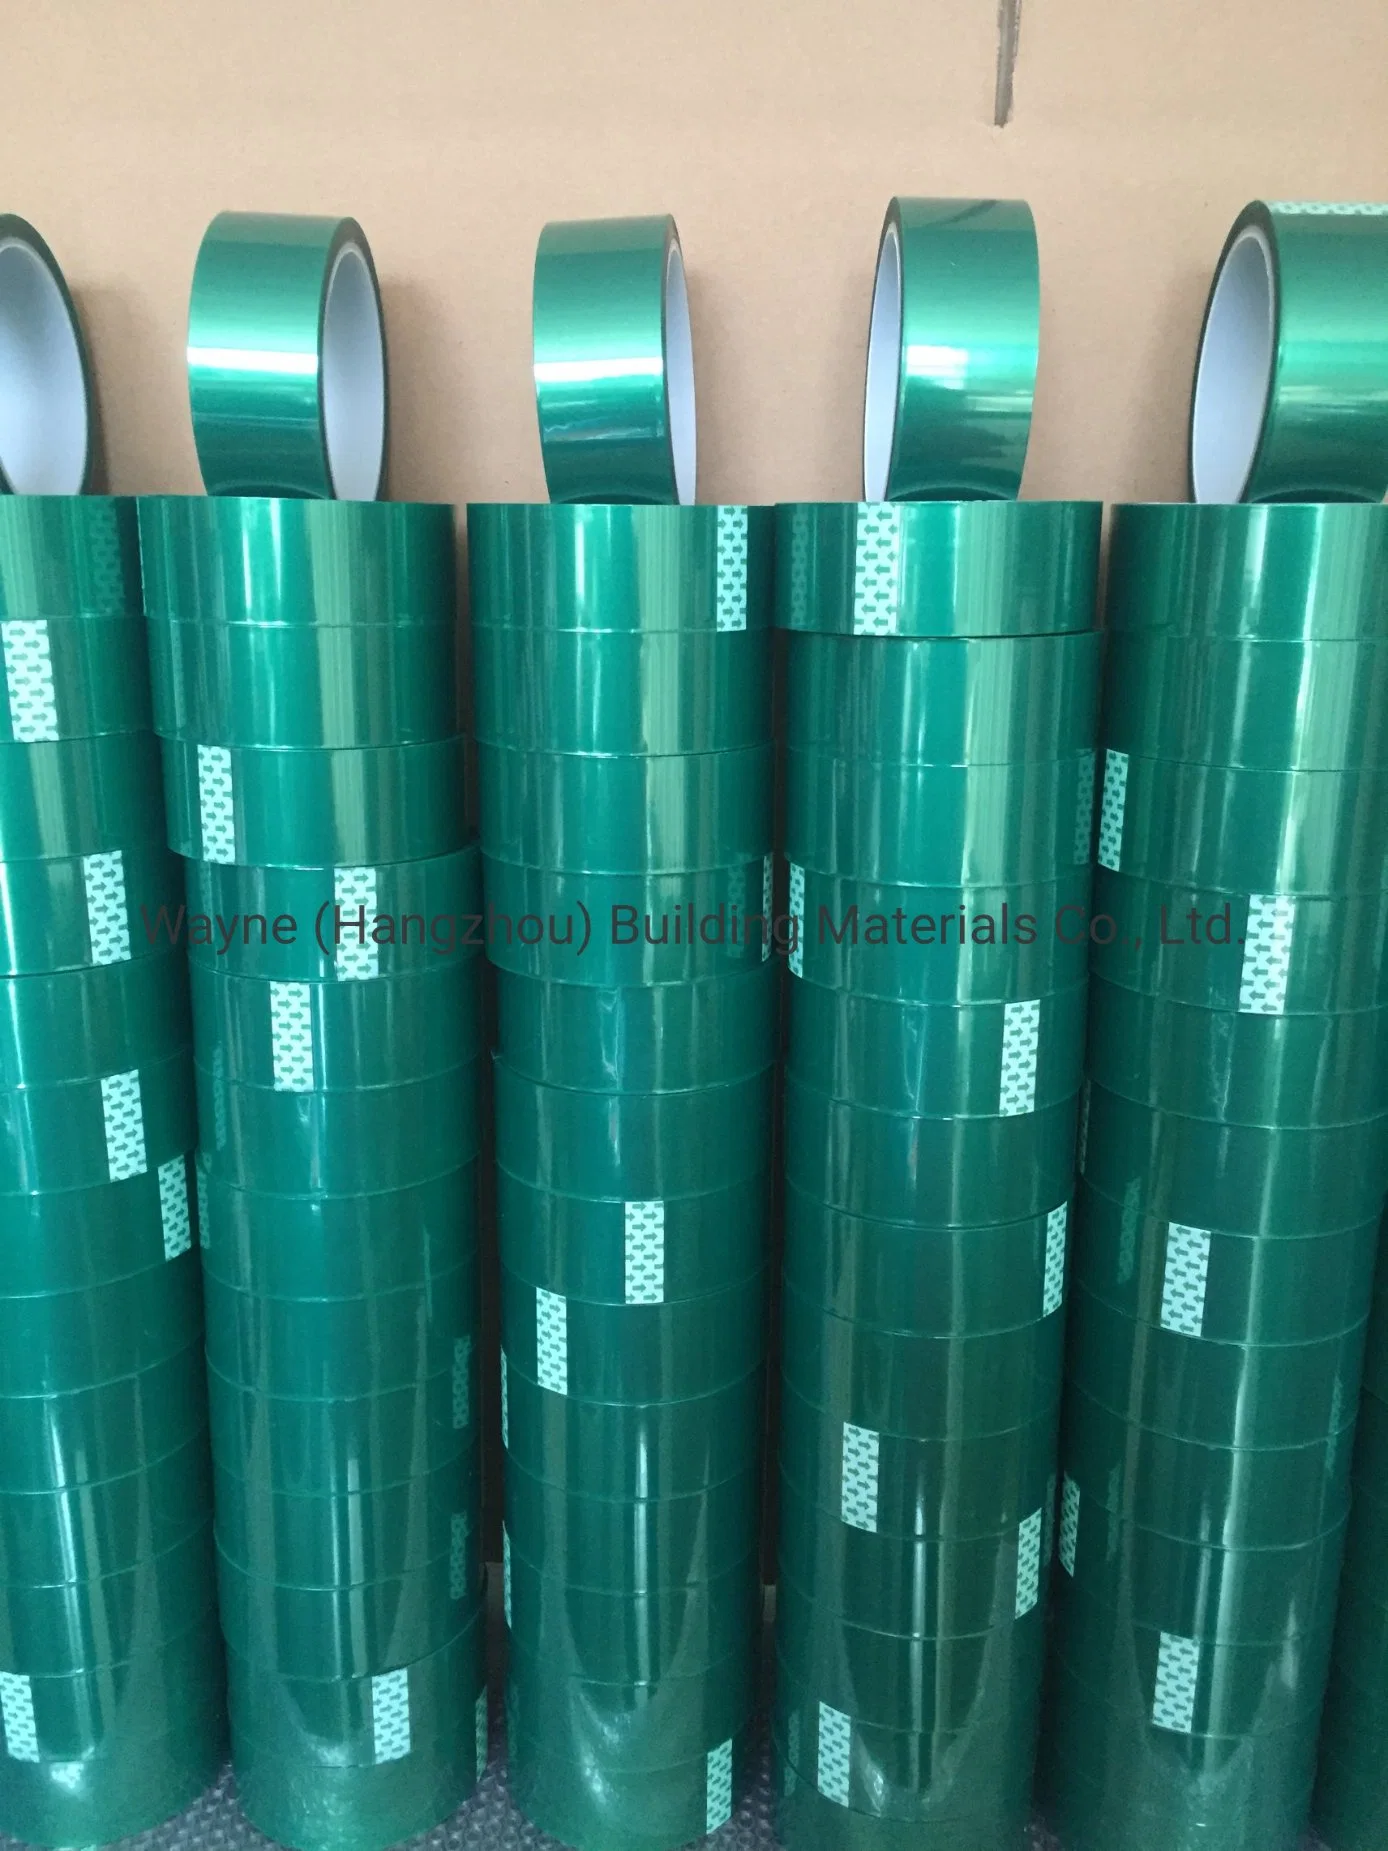 Verde de alta calidad de energía térmica cinta de enmascarar de laminación de vidrio revestimiento